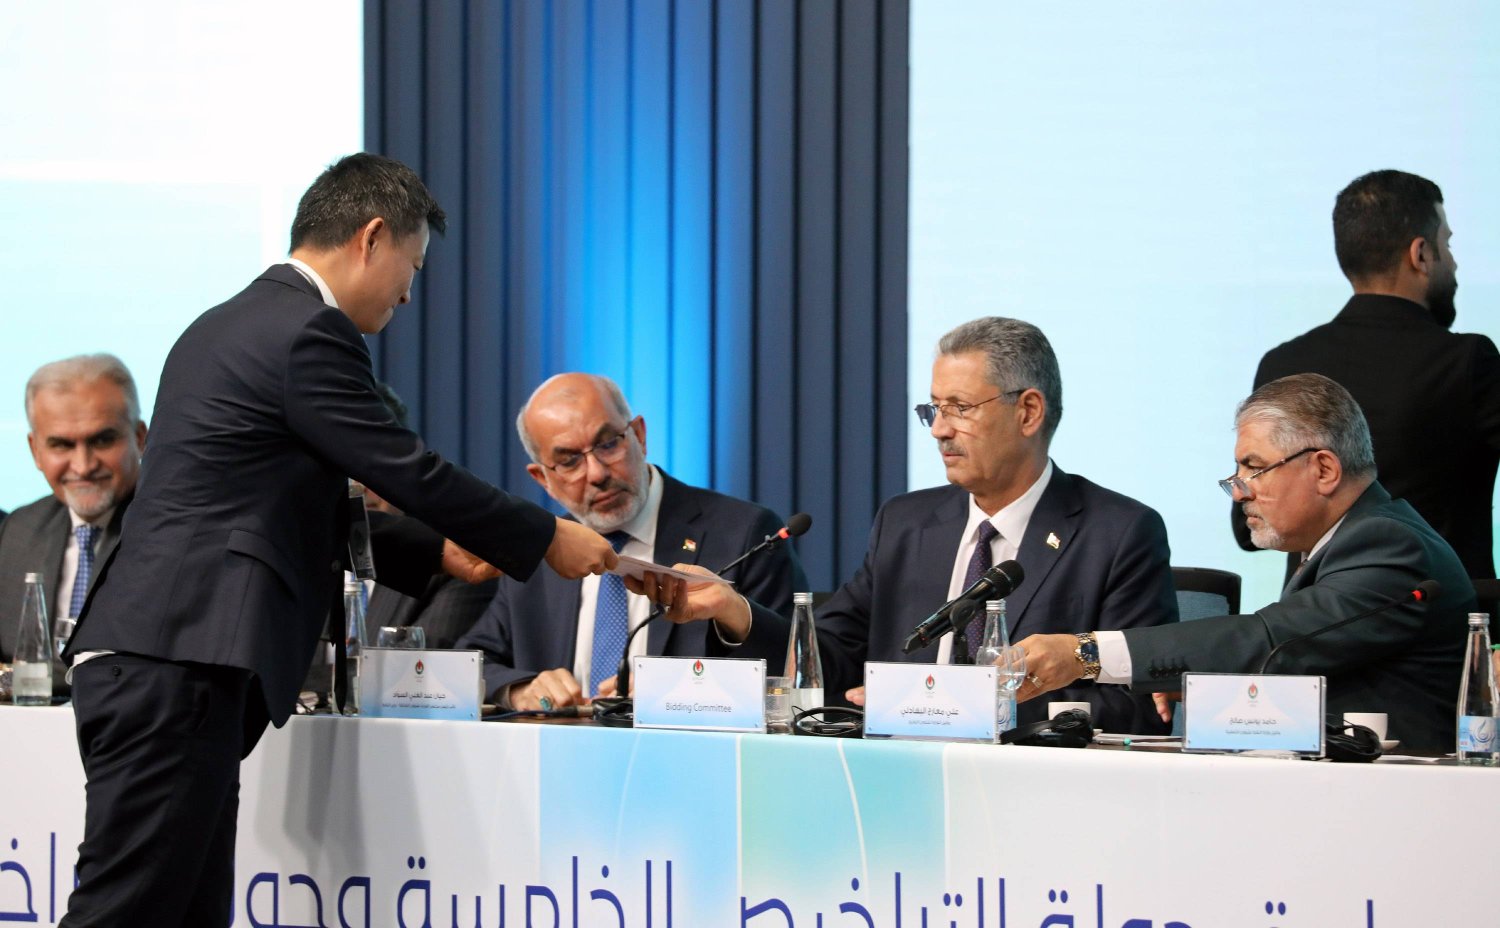 ممثل عن شركة نفط وغاز أجنبية يسلم وثائق عقده إلى وزير النفط العراقي خلال حفل جولة التراخيص السادسة لمشاريع النفط والغاز يوم السبت (إ.ب.أ)